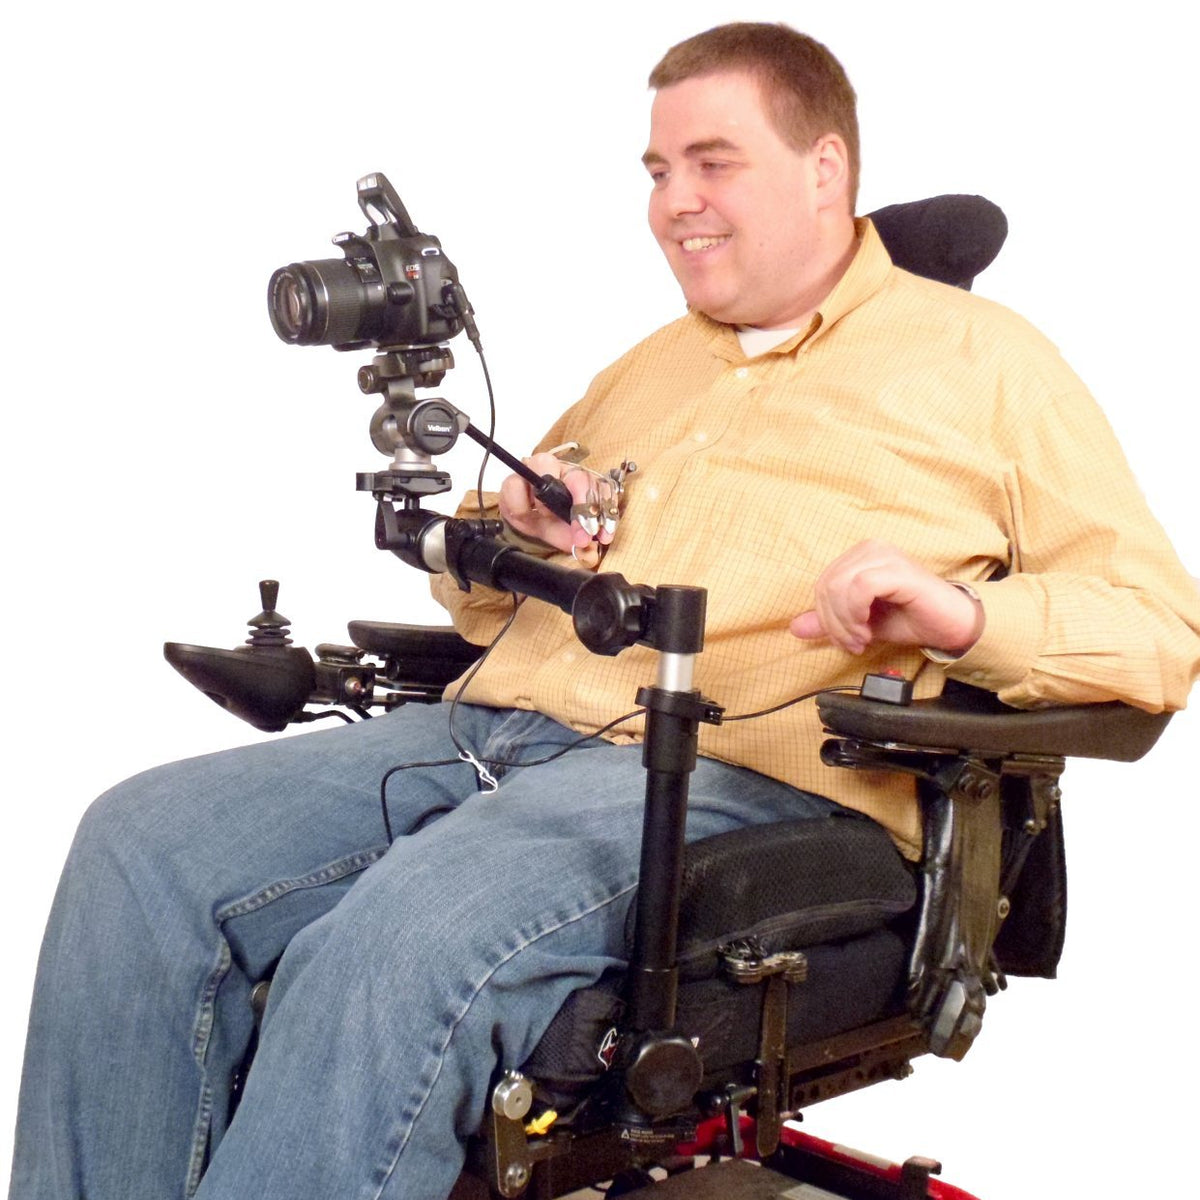 Robo kolu tekerlekli sandalye montajı üzerinde kamera motorlu tava ve eğim tripod kafası